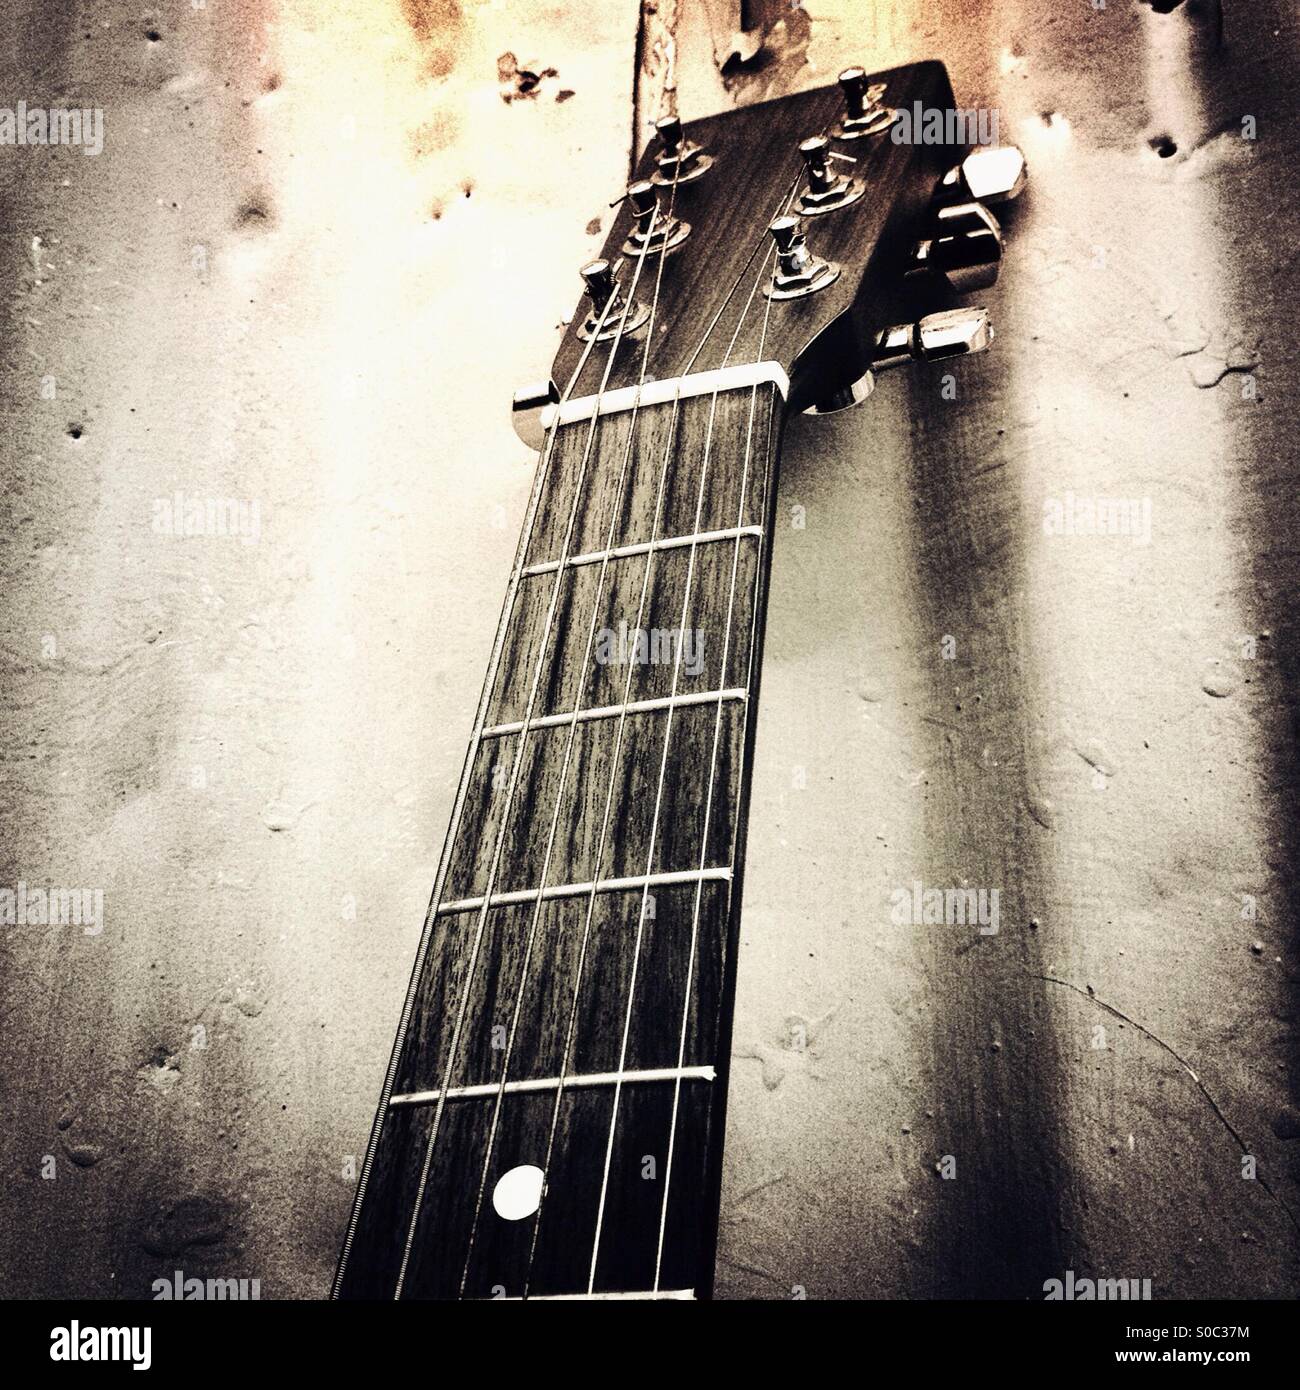 Dettaglio di una chitarra al collo. Foto Stock